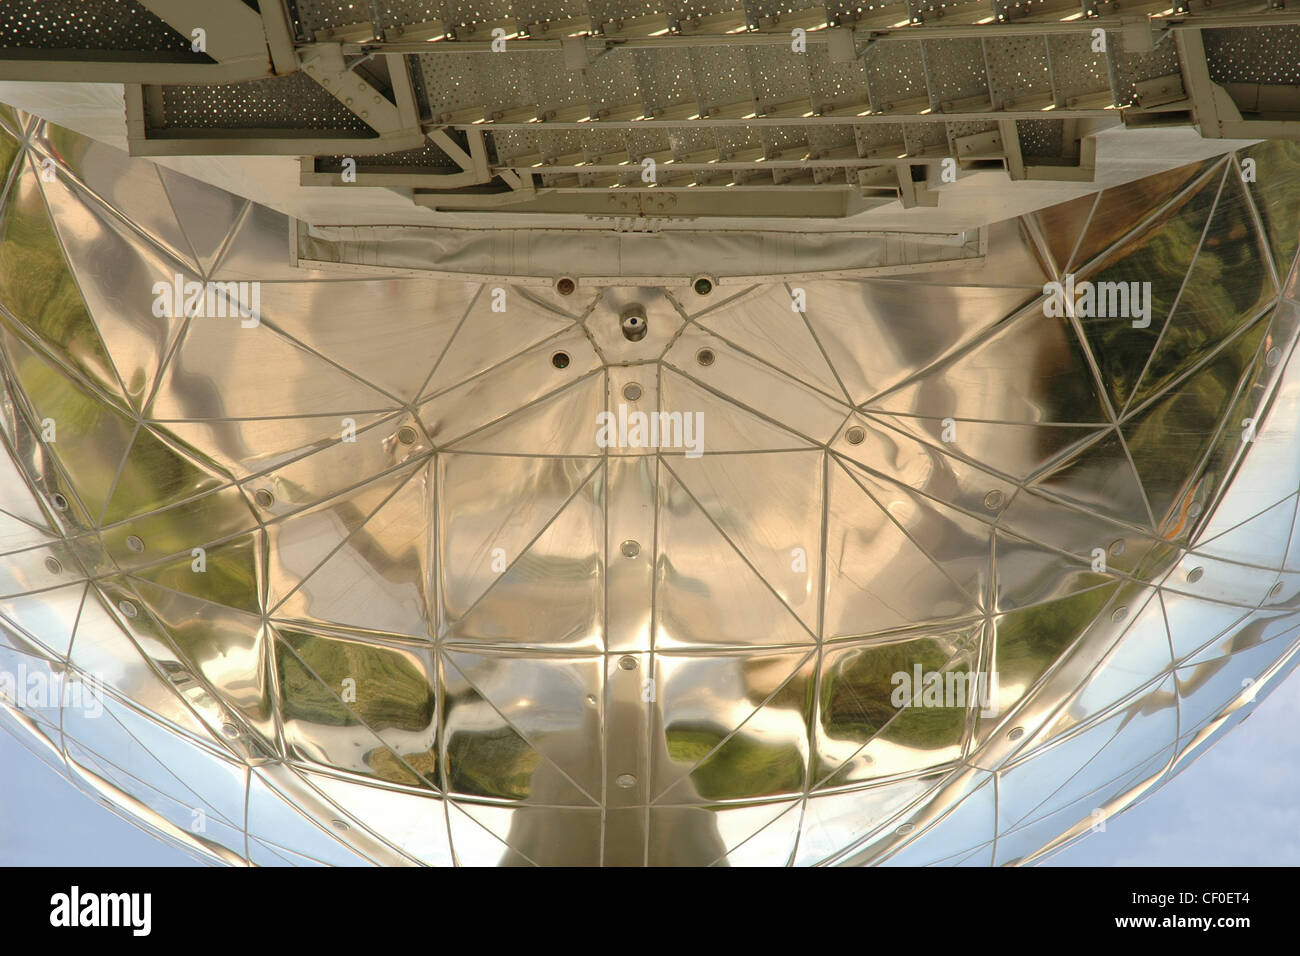 Detail Bild von der Atomium.Closeup der drei Sphären und Außentreppe. Extrem niedrige und enge Blickwinkel. Stockfoto